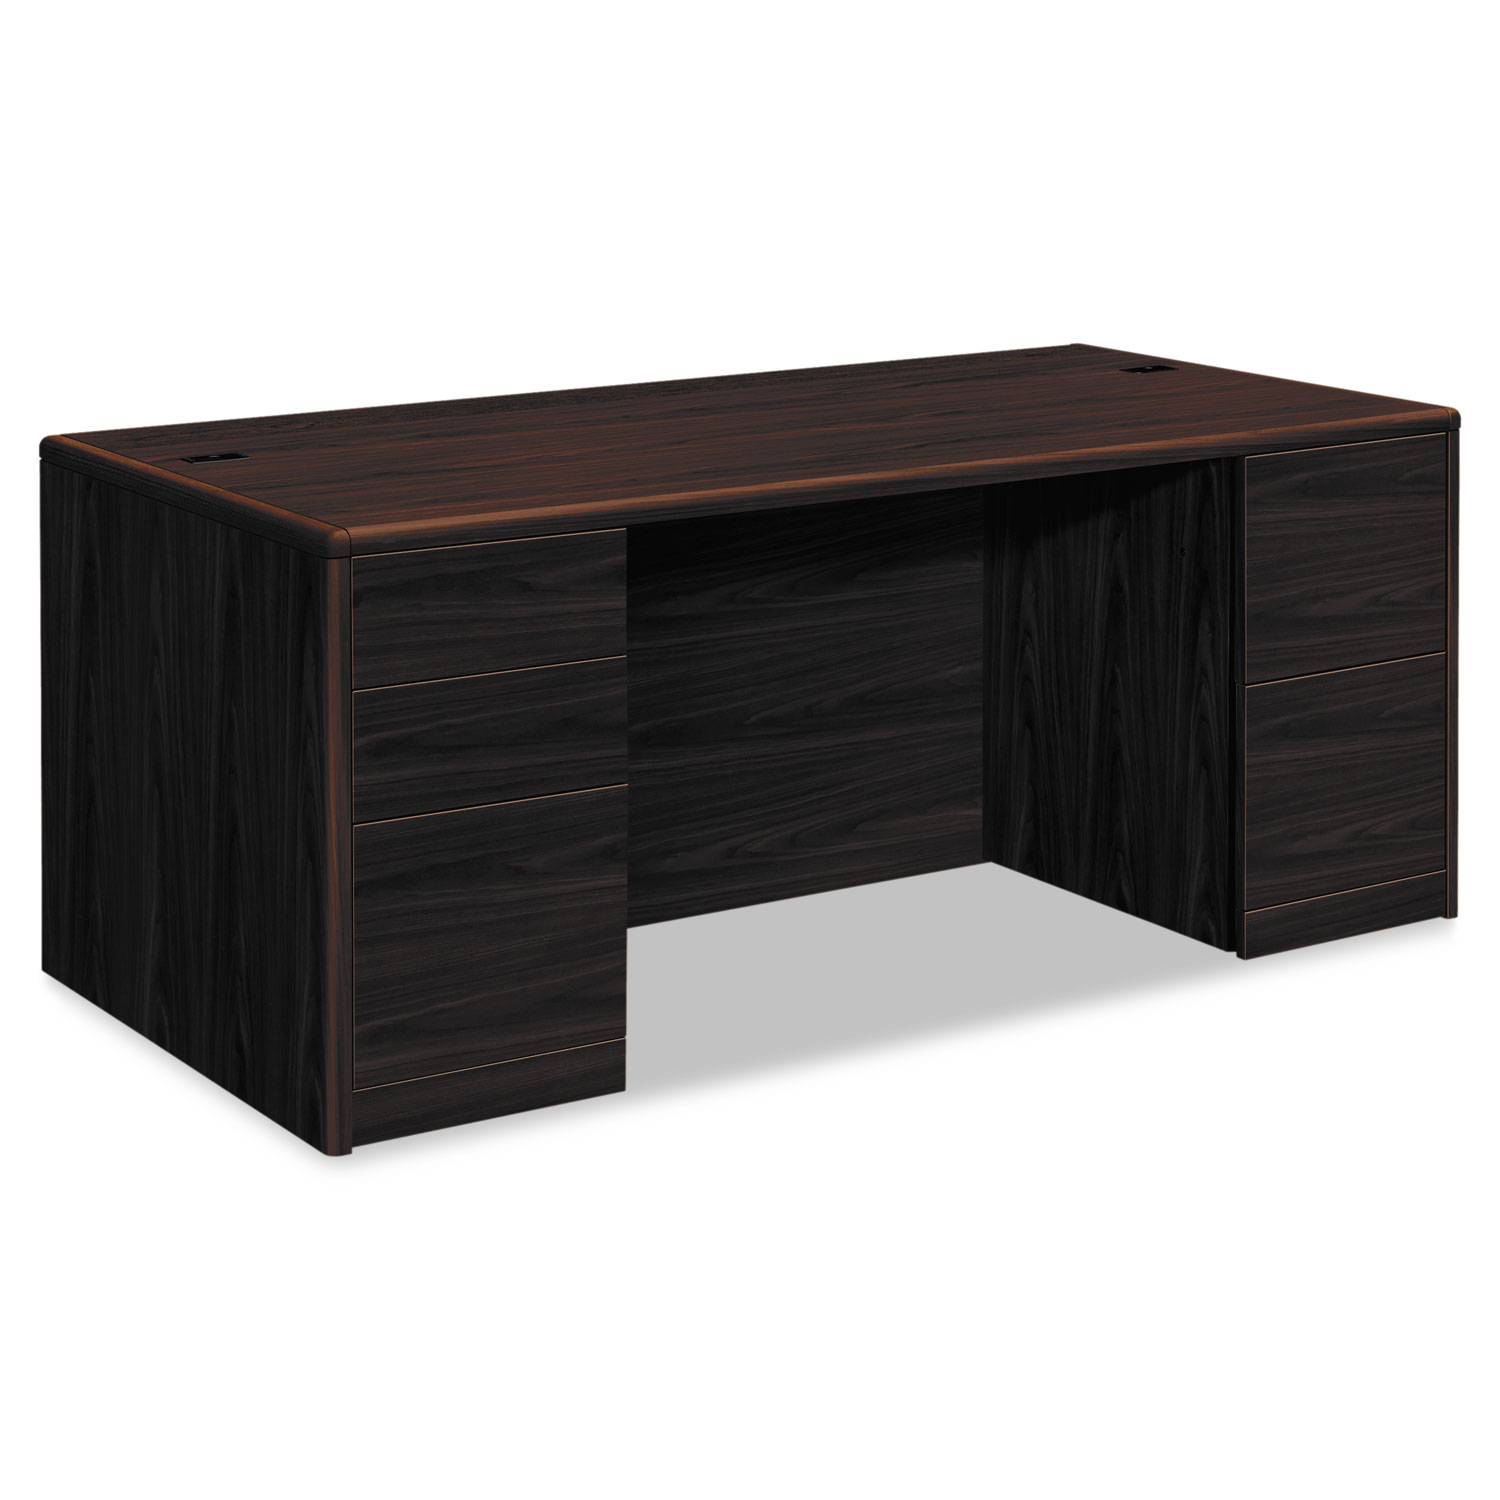  HON H10799.NN 10700 Double Pedestal Desk with Full Pedestals, 72w x 36d x 29.5h, Mahogany (HON10799NN) 